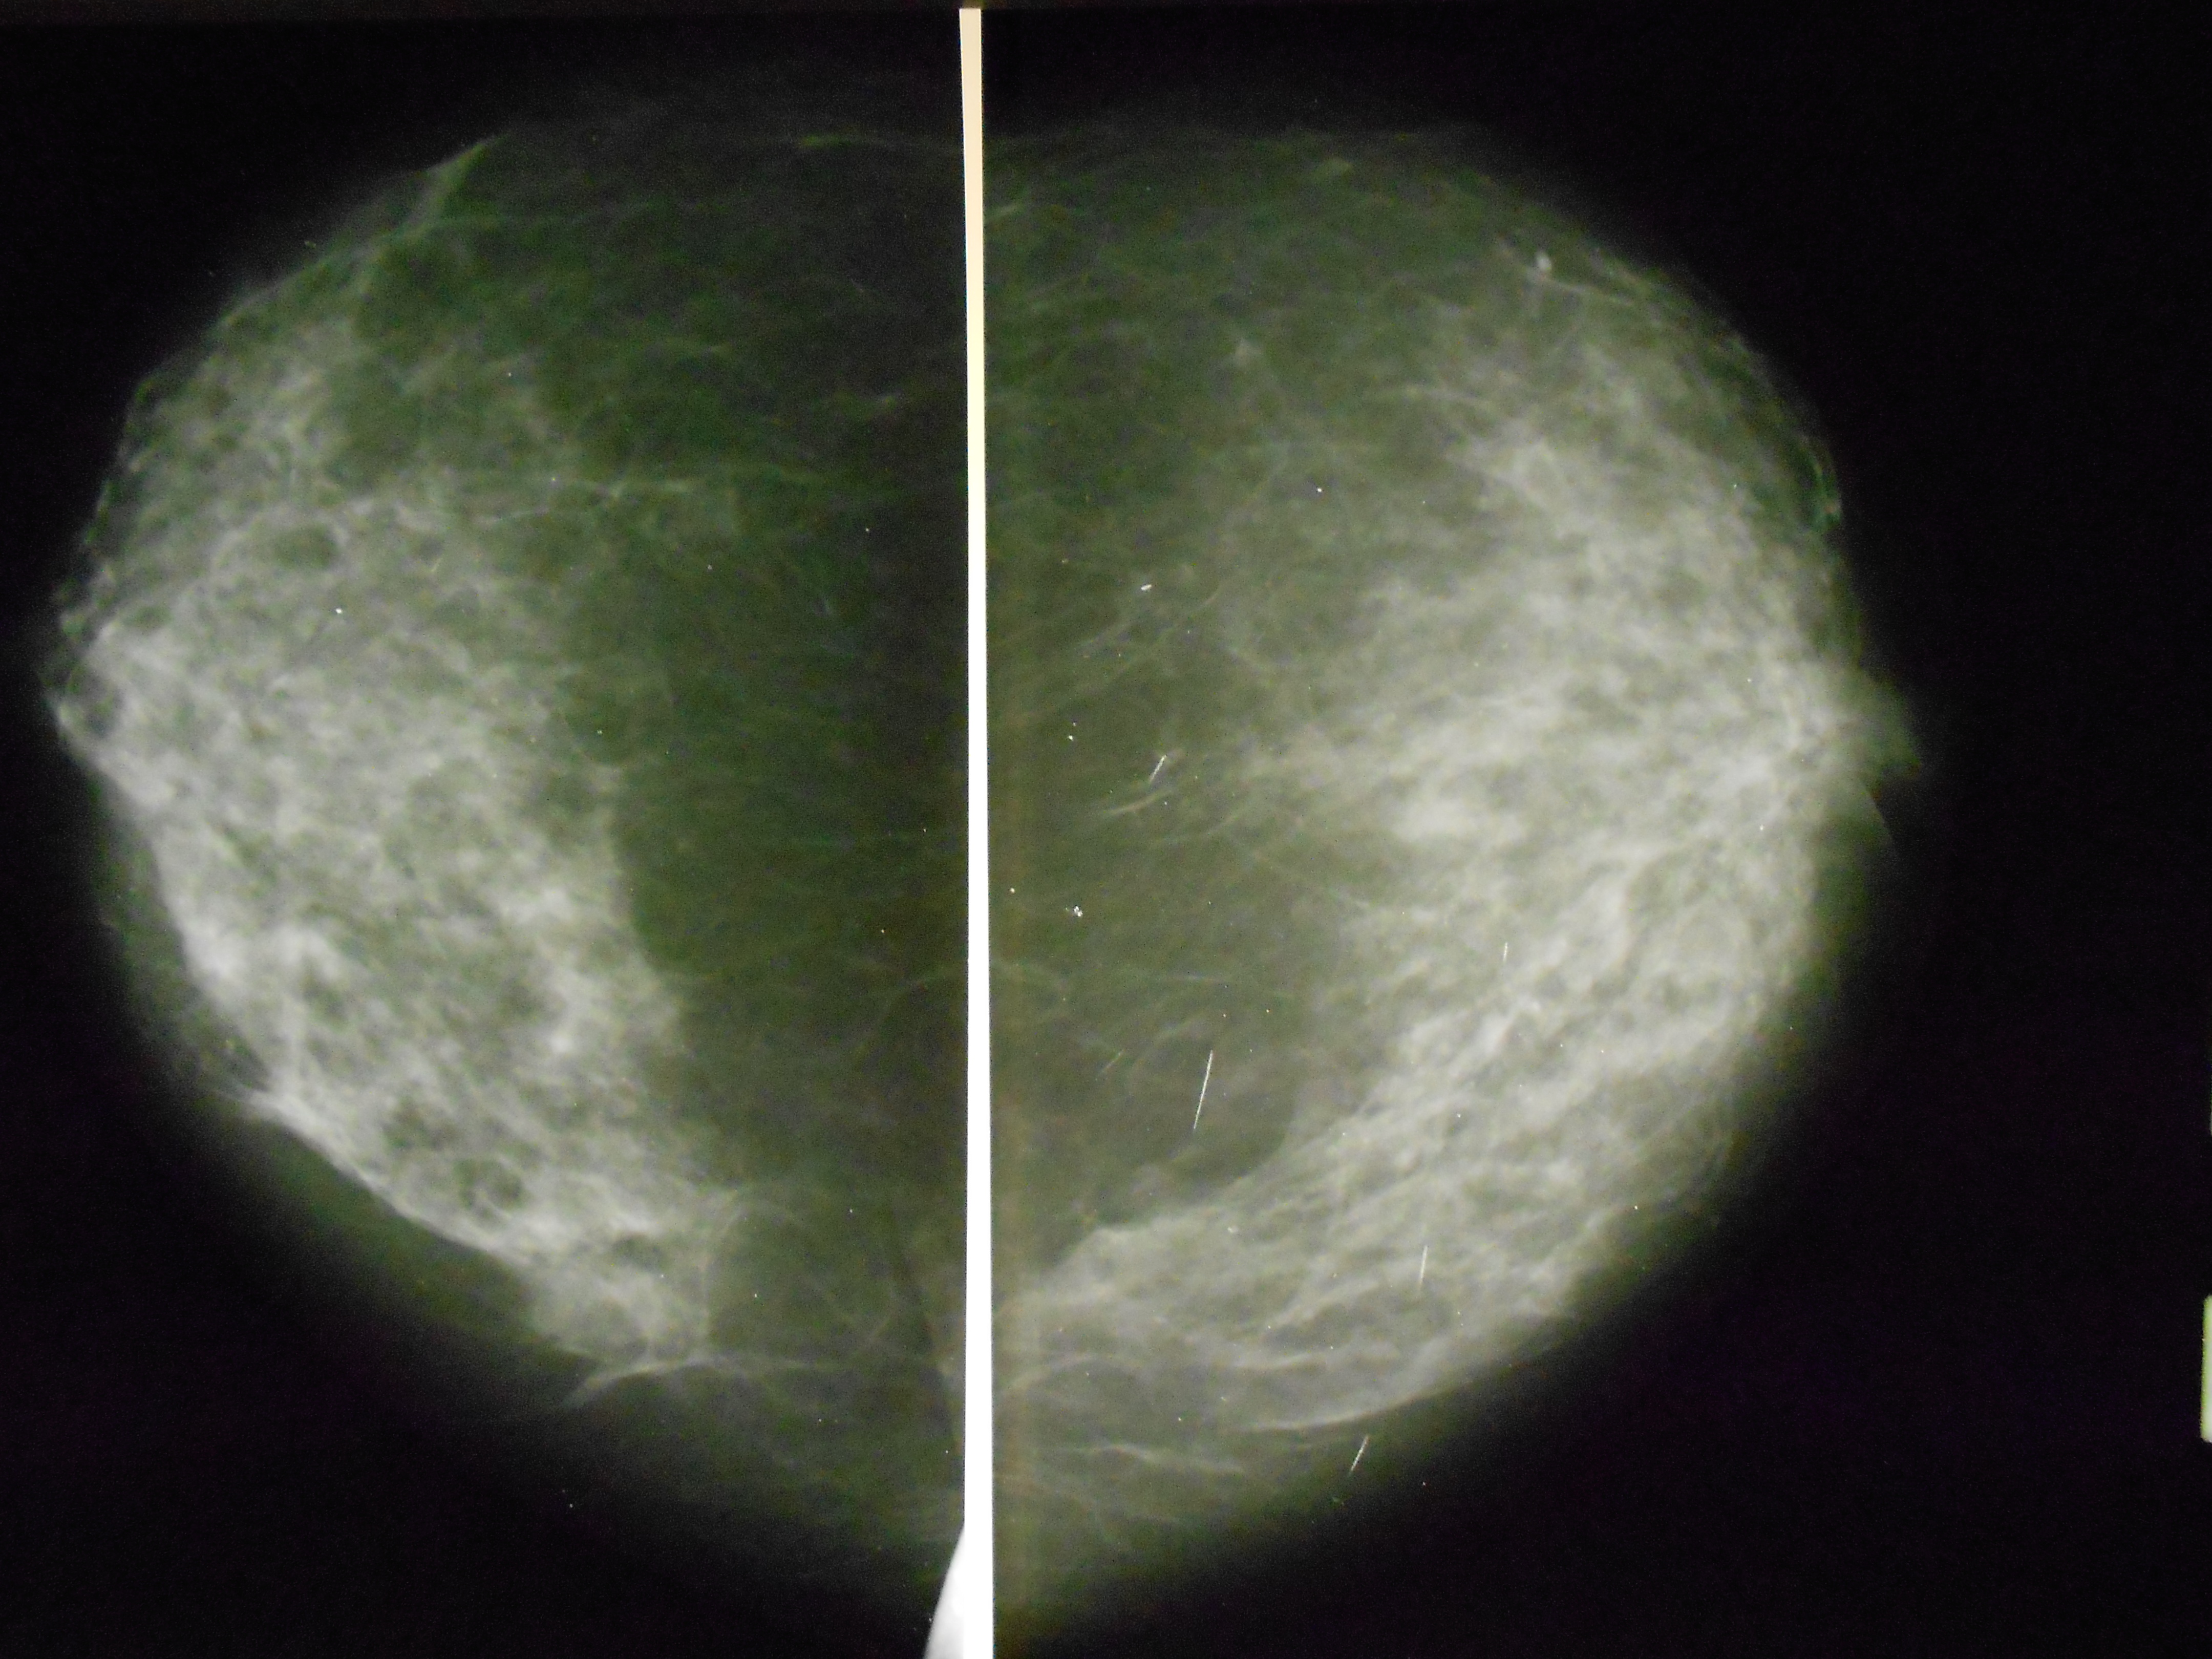 Как выглядит опухоль молочной железы на маммографии фото злокачественная